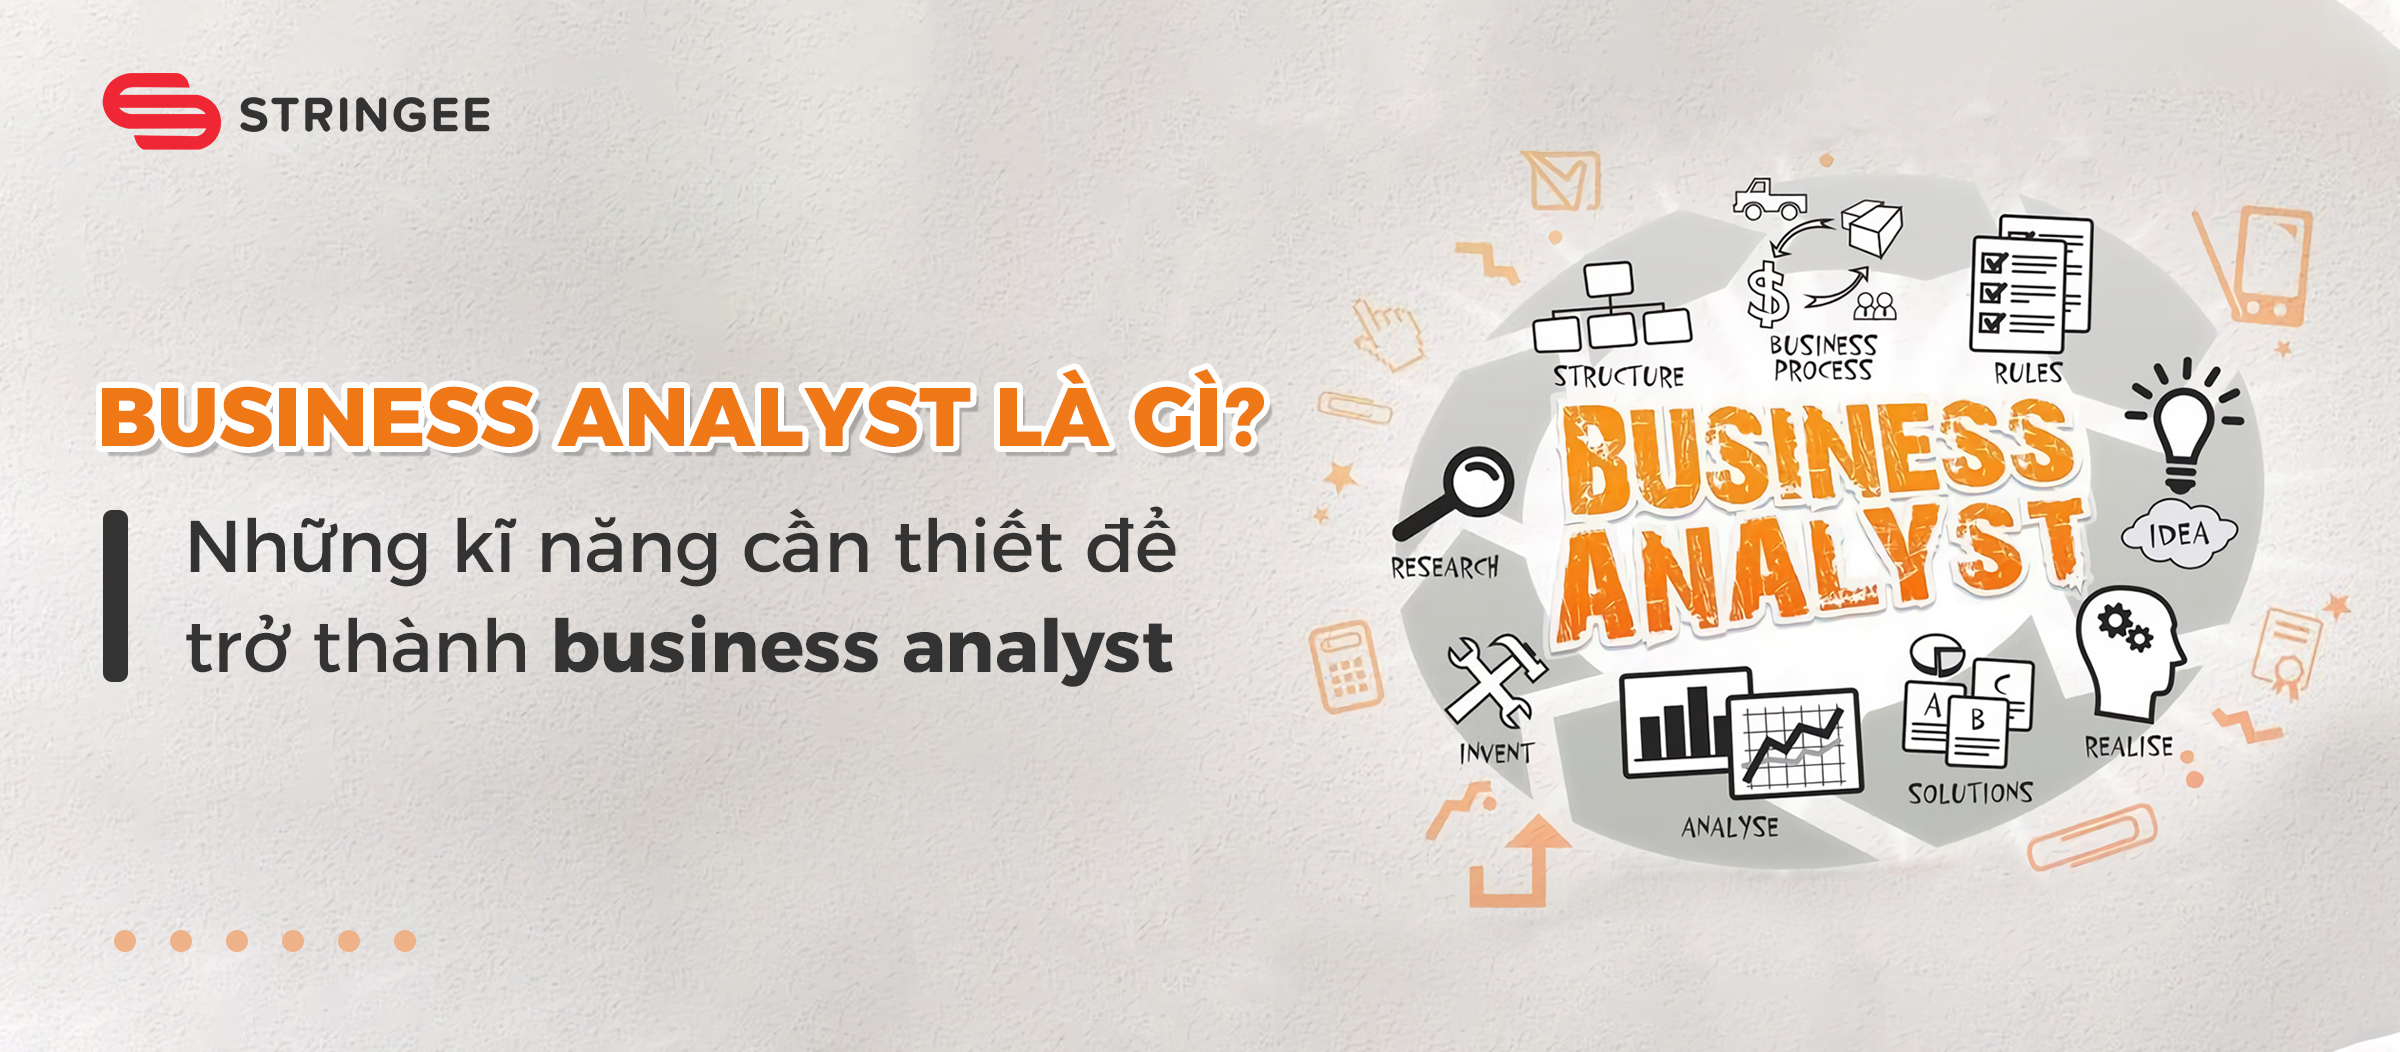 Business analyst là gì? Những kĩ năng cần thiết để trở thành business analyst